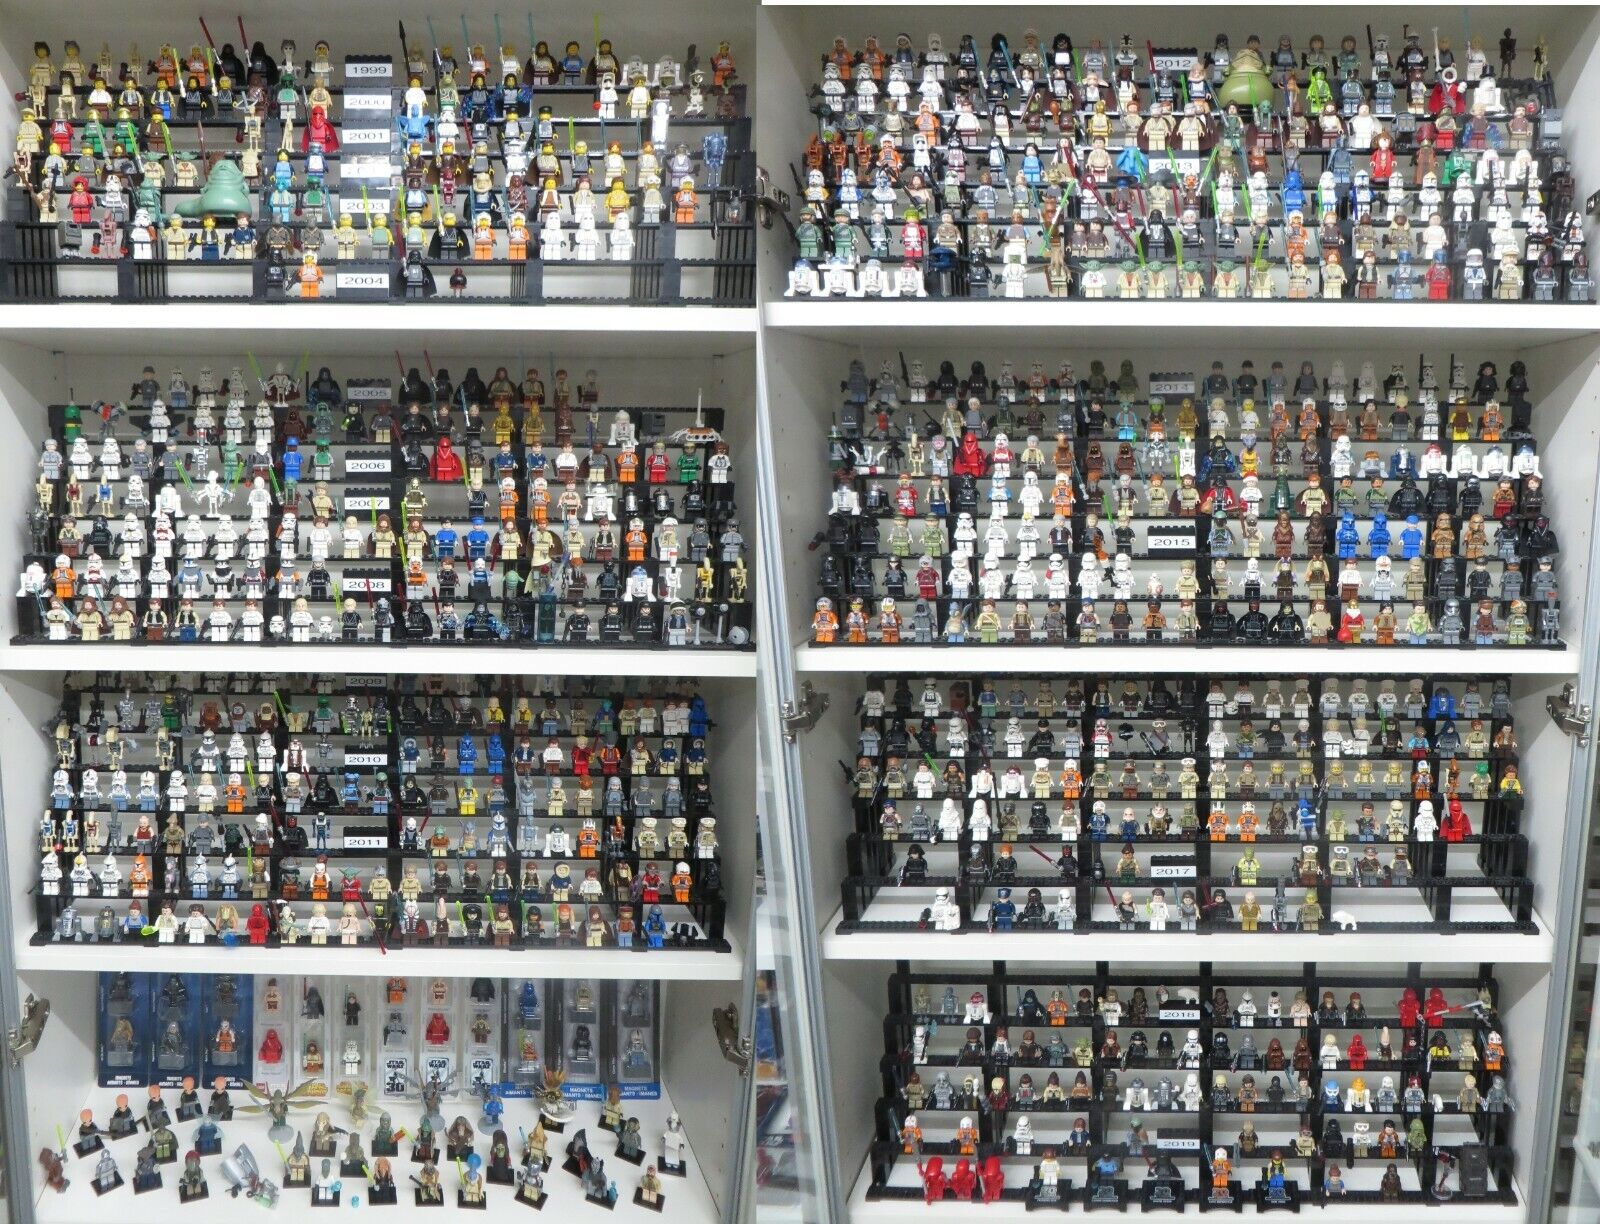 LEGO Star Wars Figuras Colección más de 900 figuras diferentes a elegir NUEVO